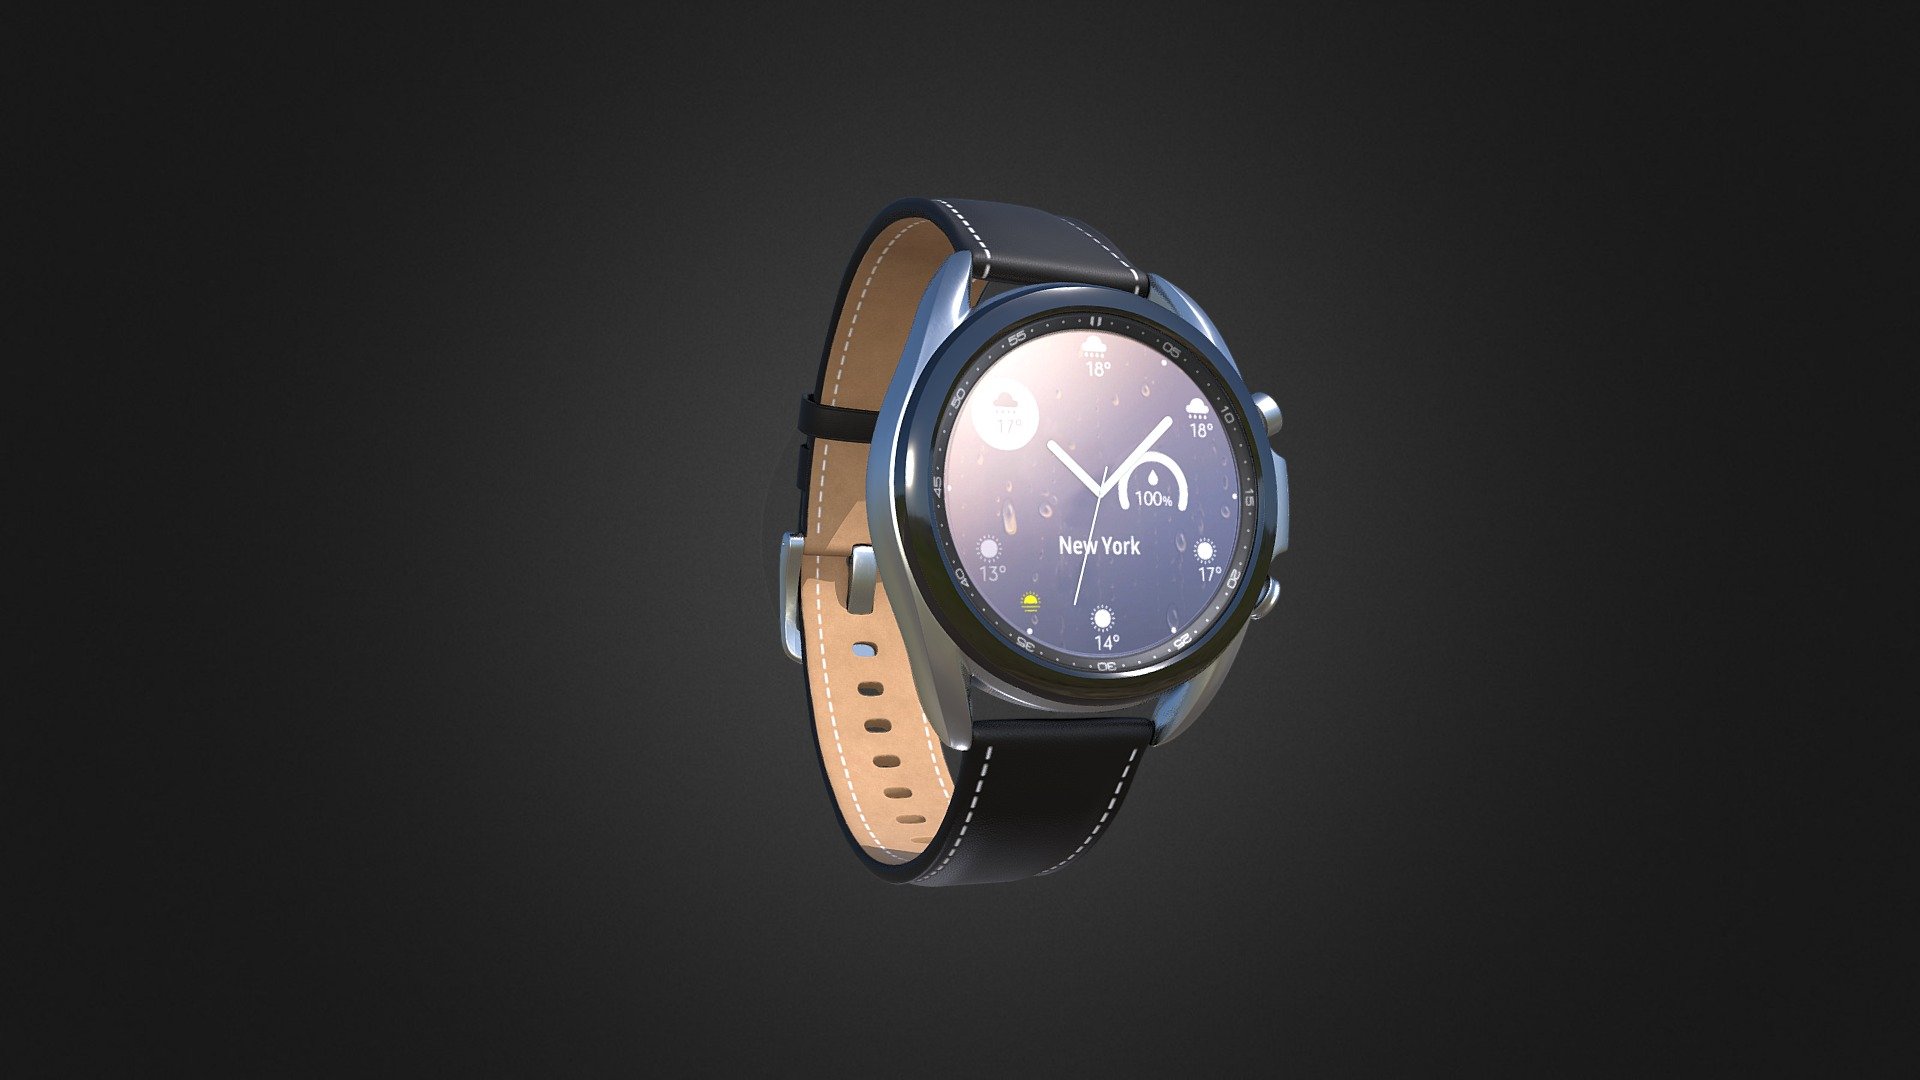 Samsung Galaxy Watch  textured by me - Samsung Galaxy Watch - 3D model by Mashood_ (@mashood) 3d model